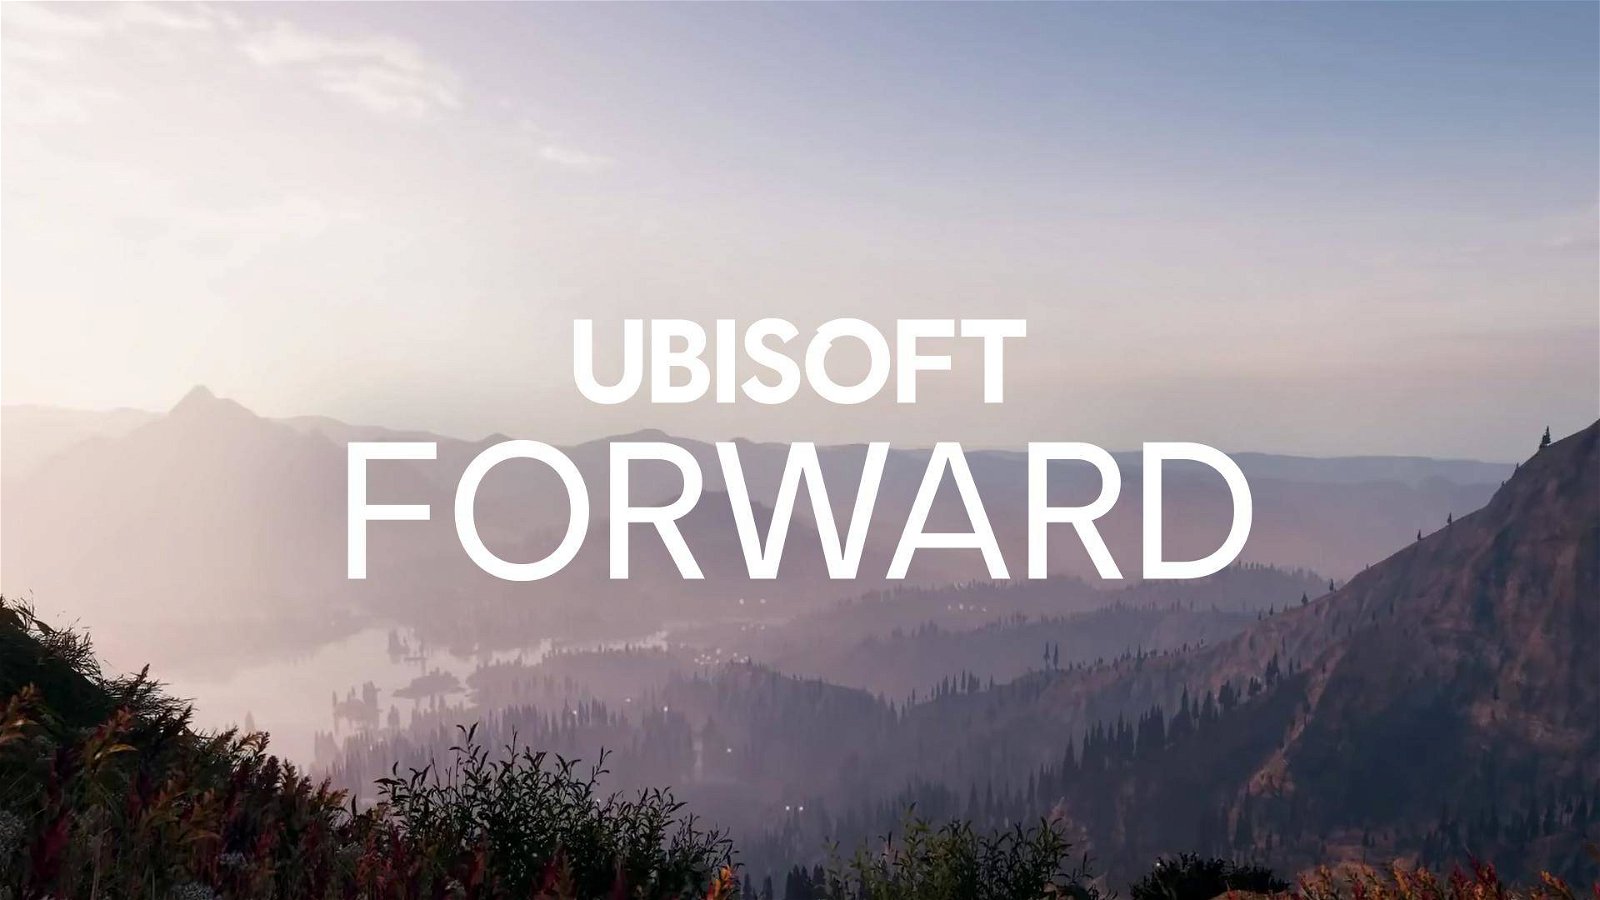 Immagine di Ubisoft Forward, Watch Dogs 2 Gratis a chi guarda l'evento